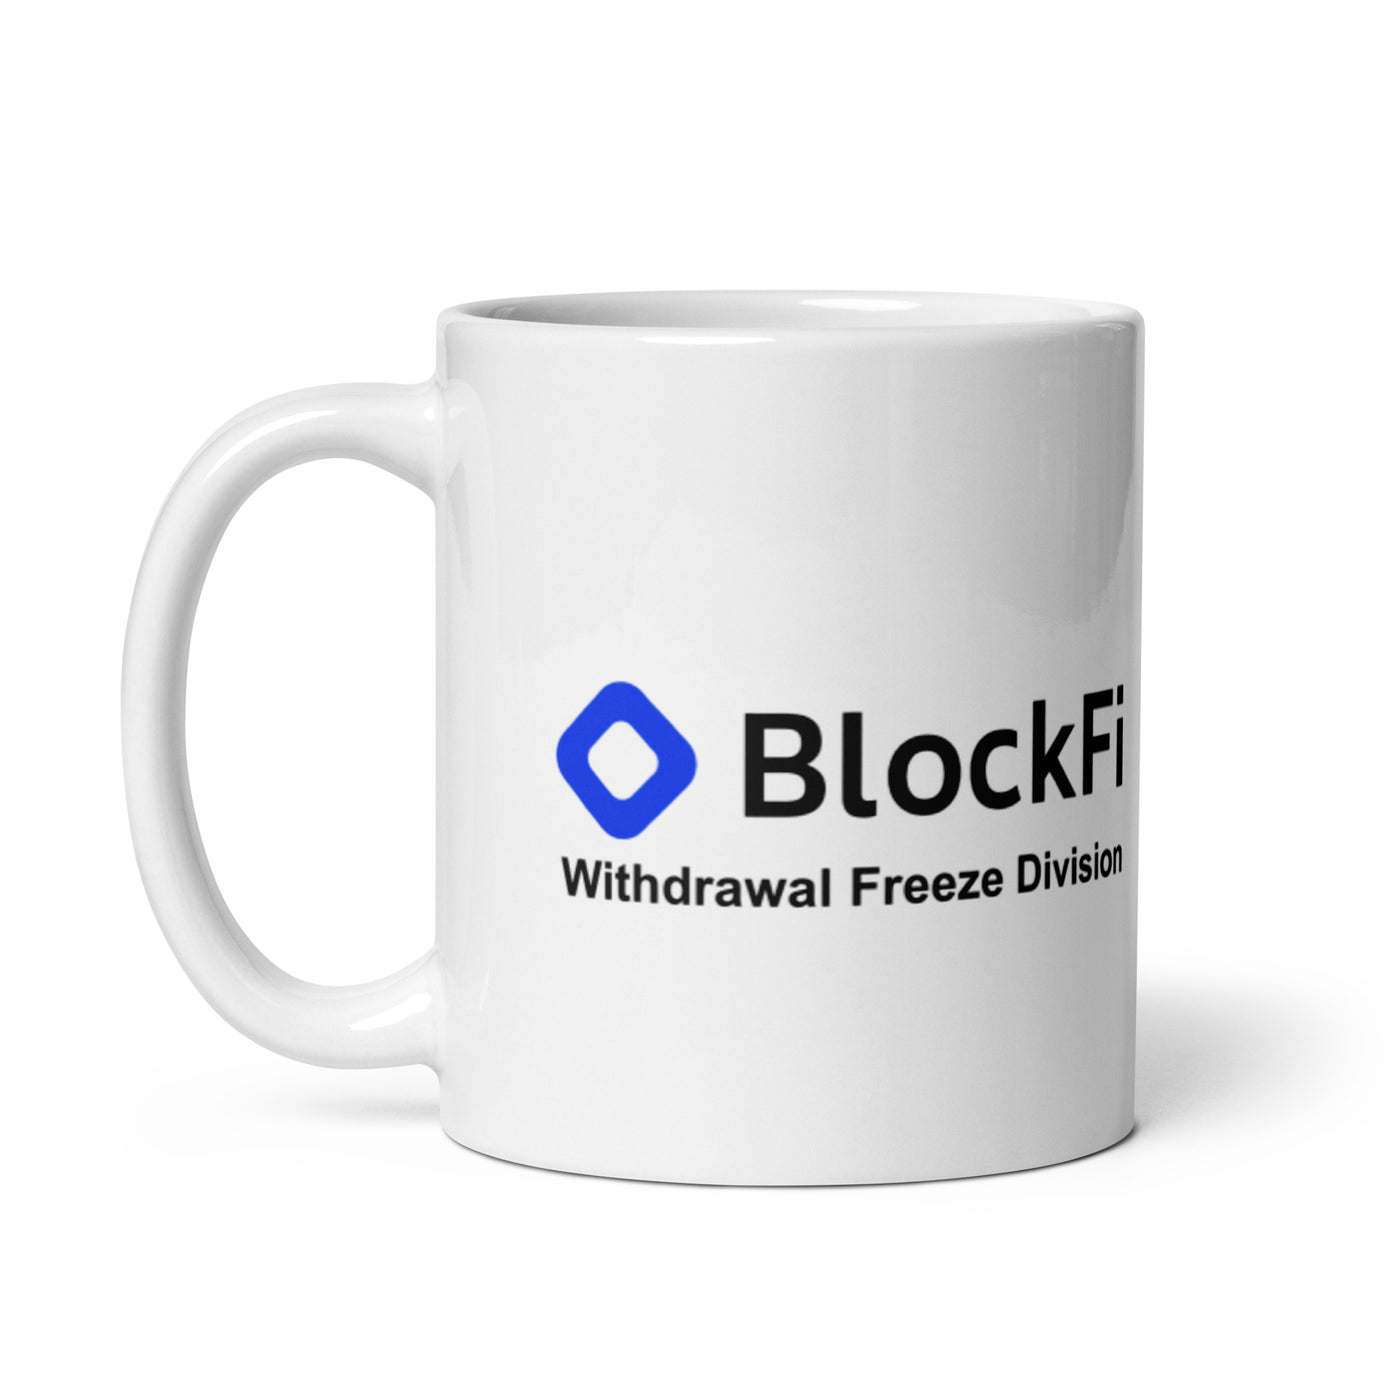 BlockFi Withdrawal Division Mug - Arbitrage Andy